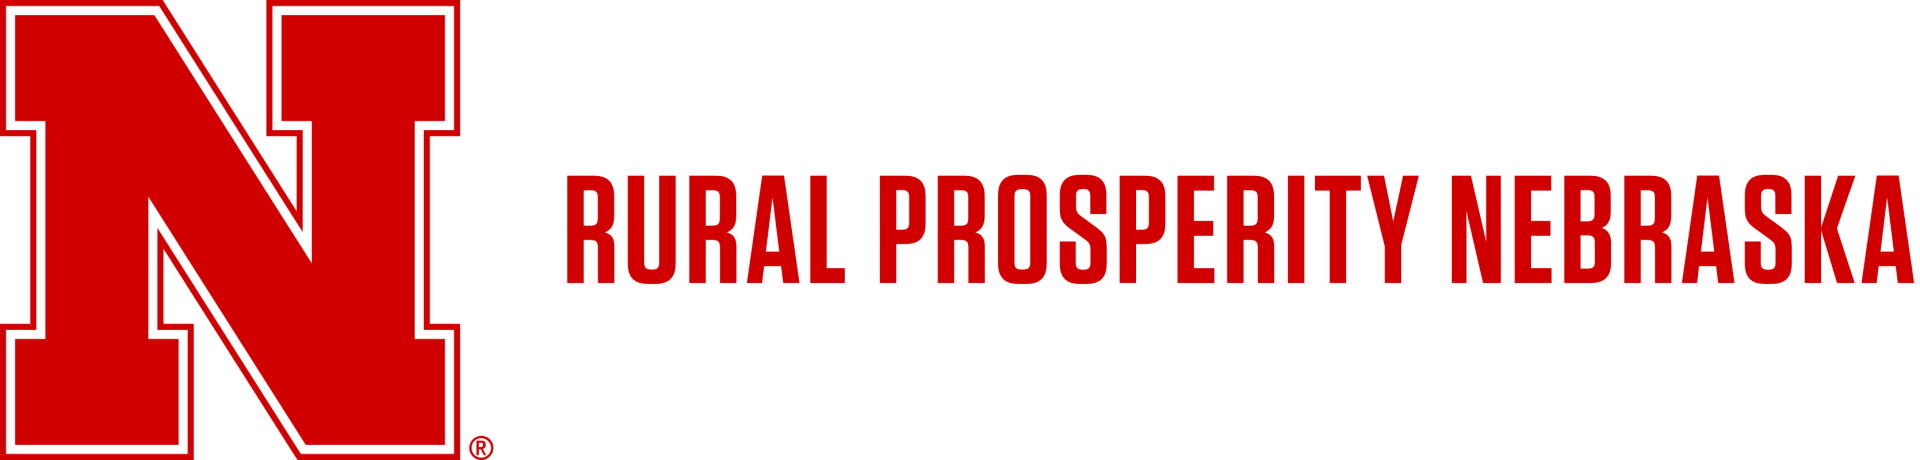 Rural Prosperity Nebraska logo